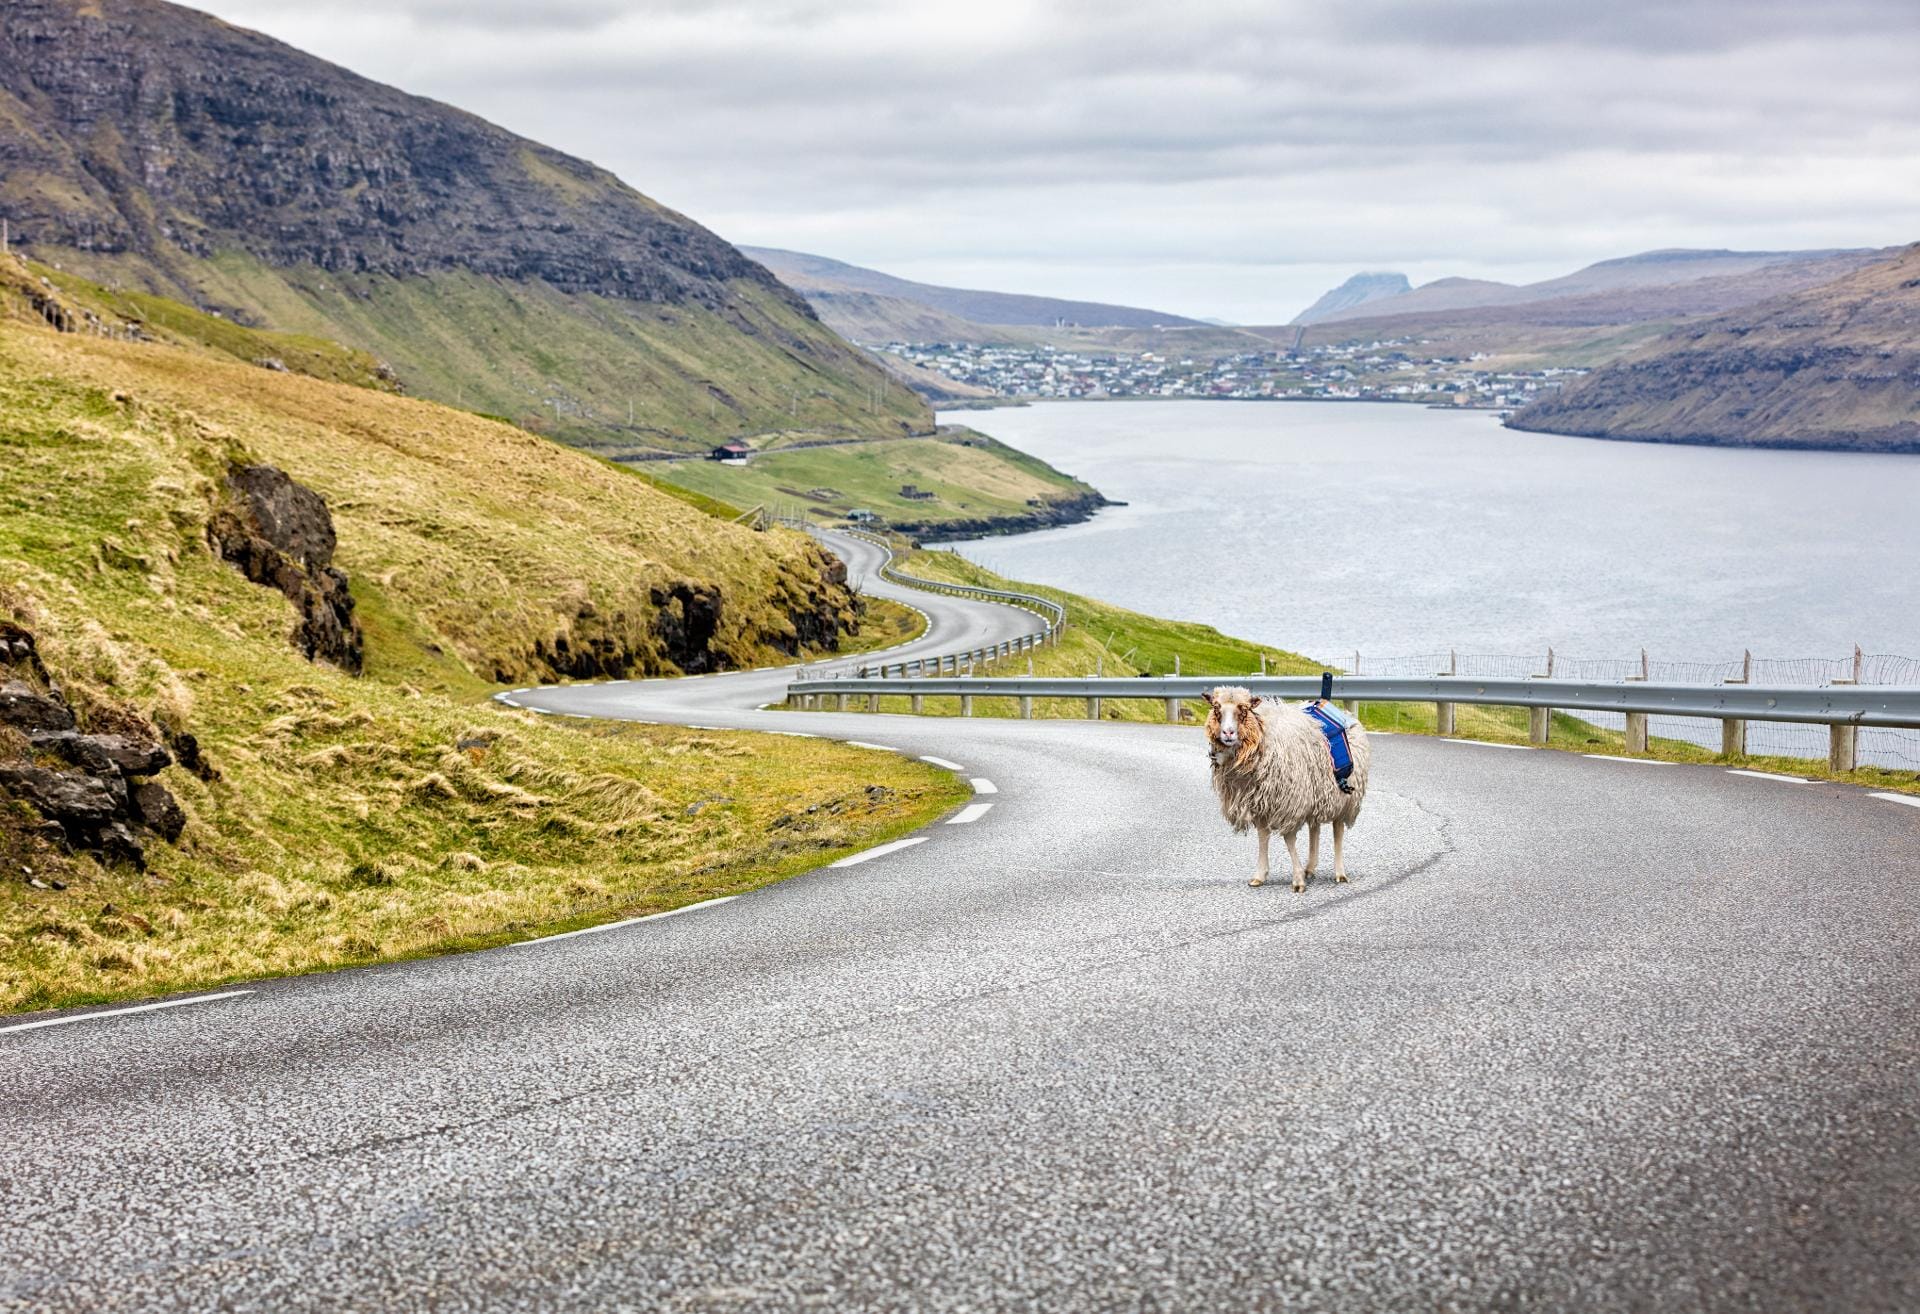 Zum Ablichten einer geschwungenen Bergstraße ist ein eigenwilliges Schaf nicht bestens geeignet.